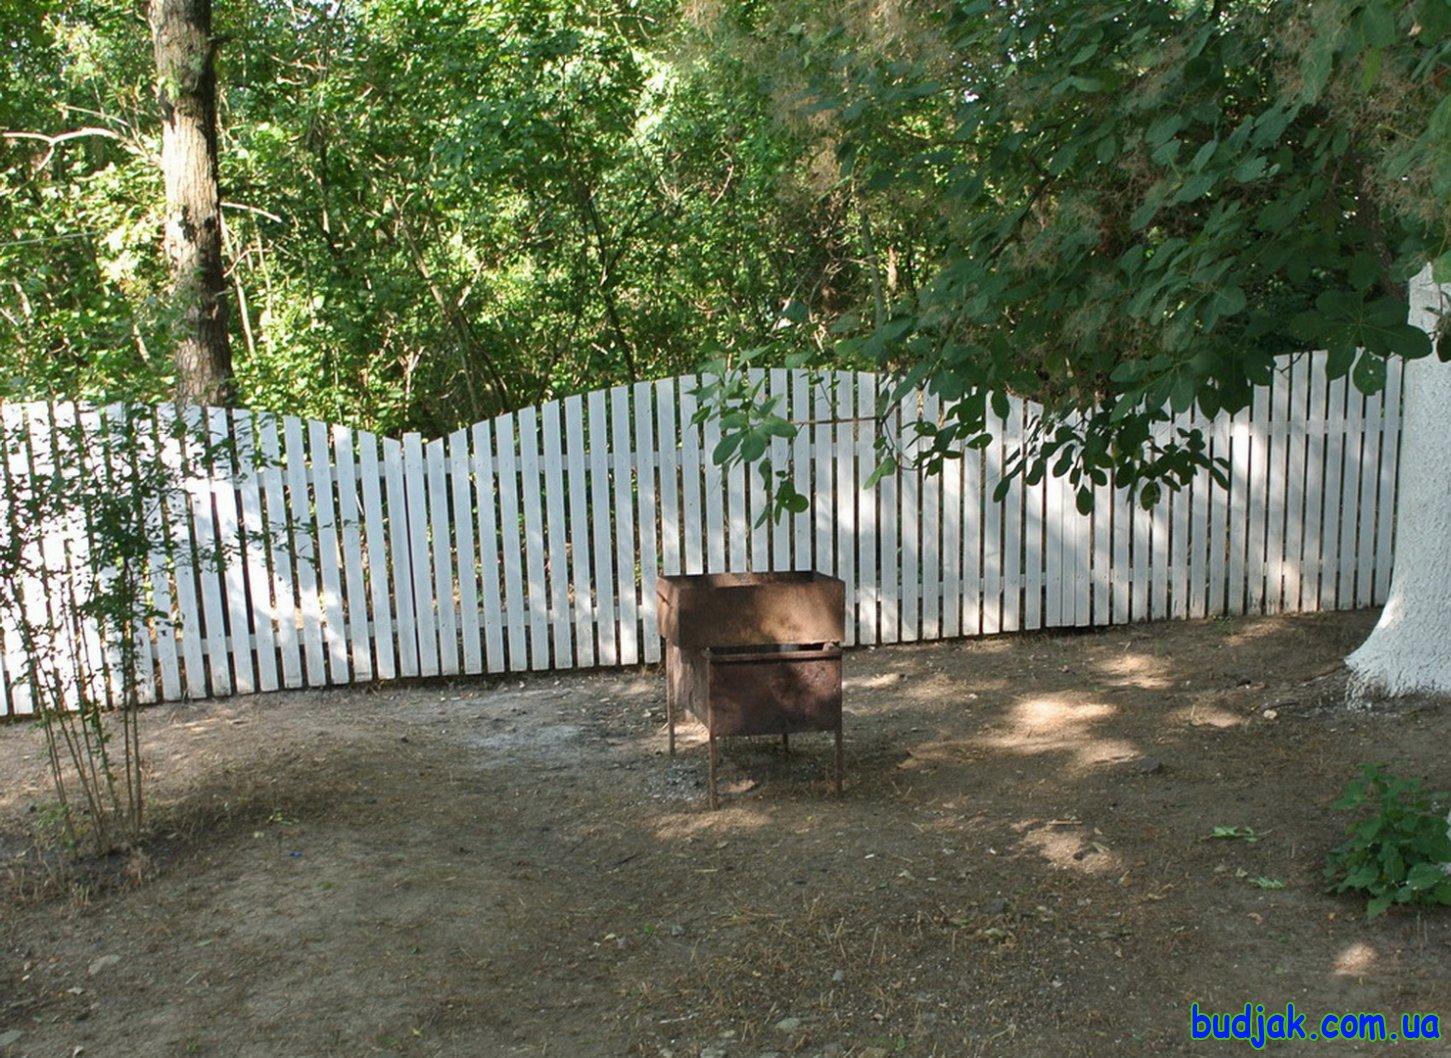 Частный коттедж отдыха «Дубовая роща» на курорте Лебедевка. Фото № 11001